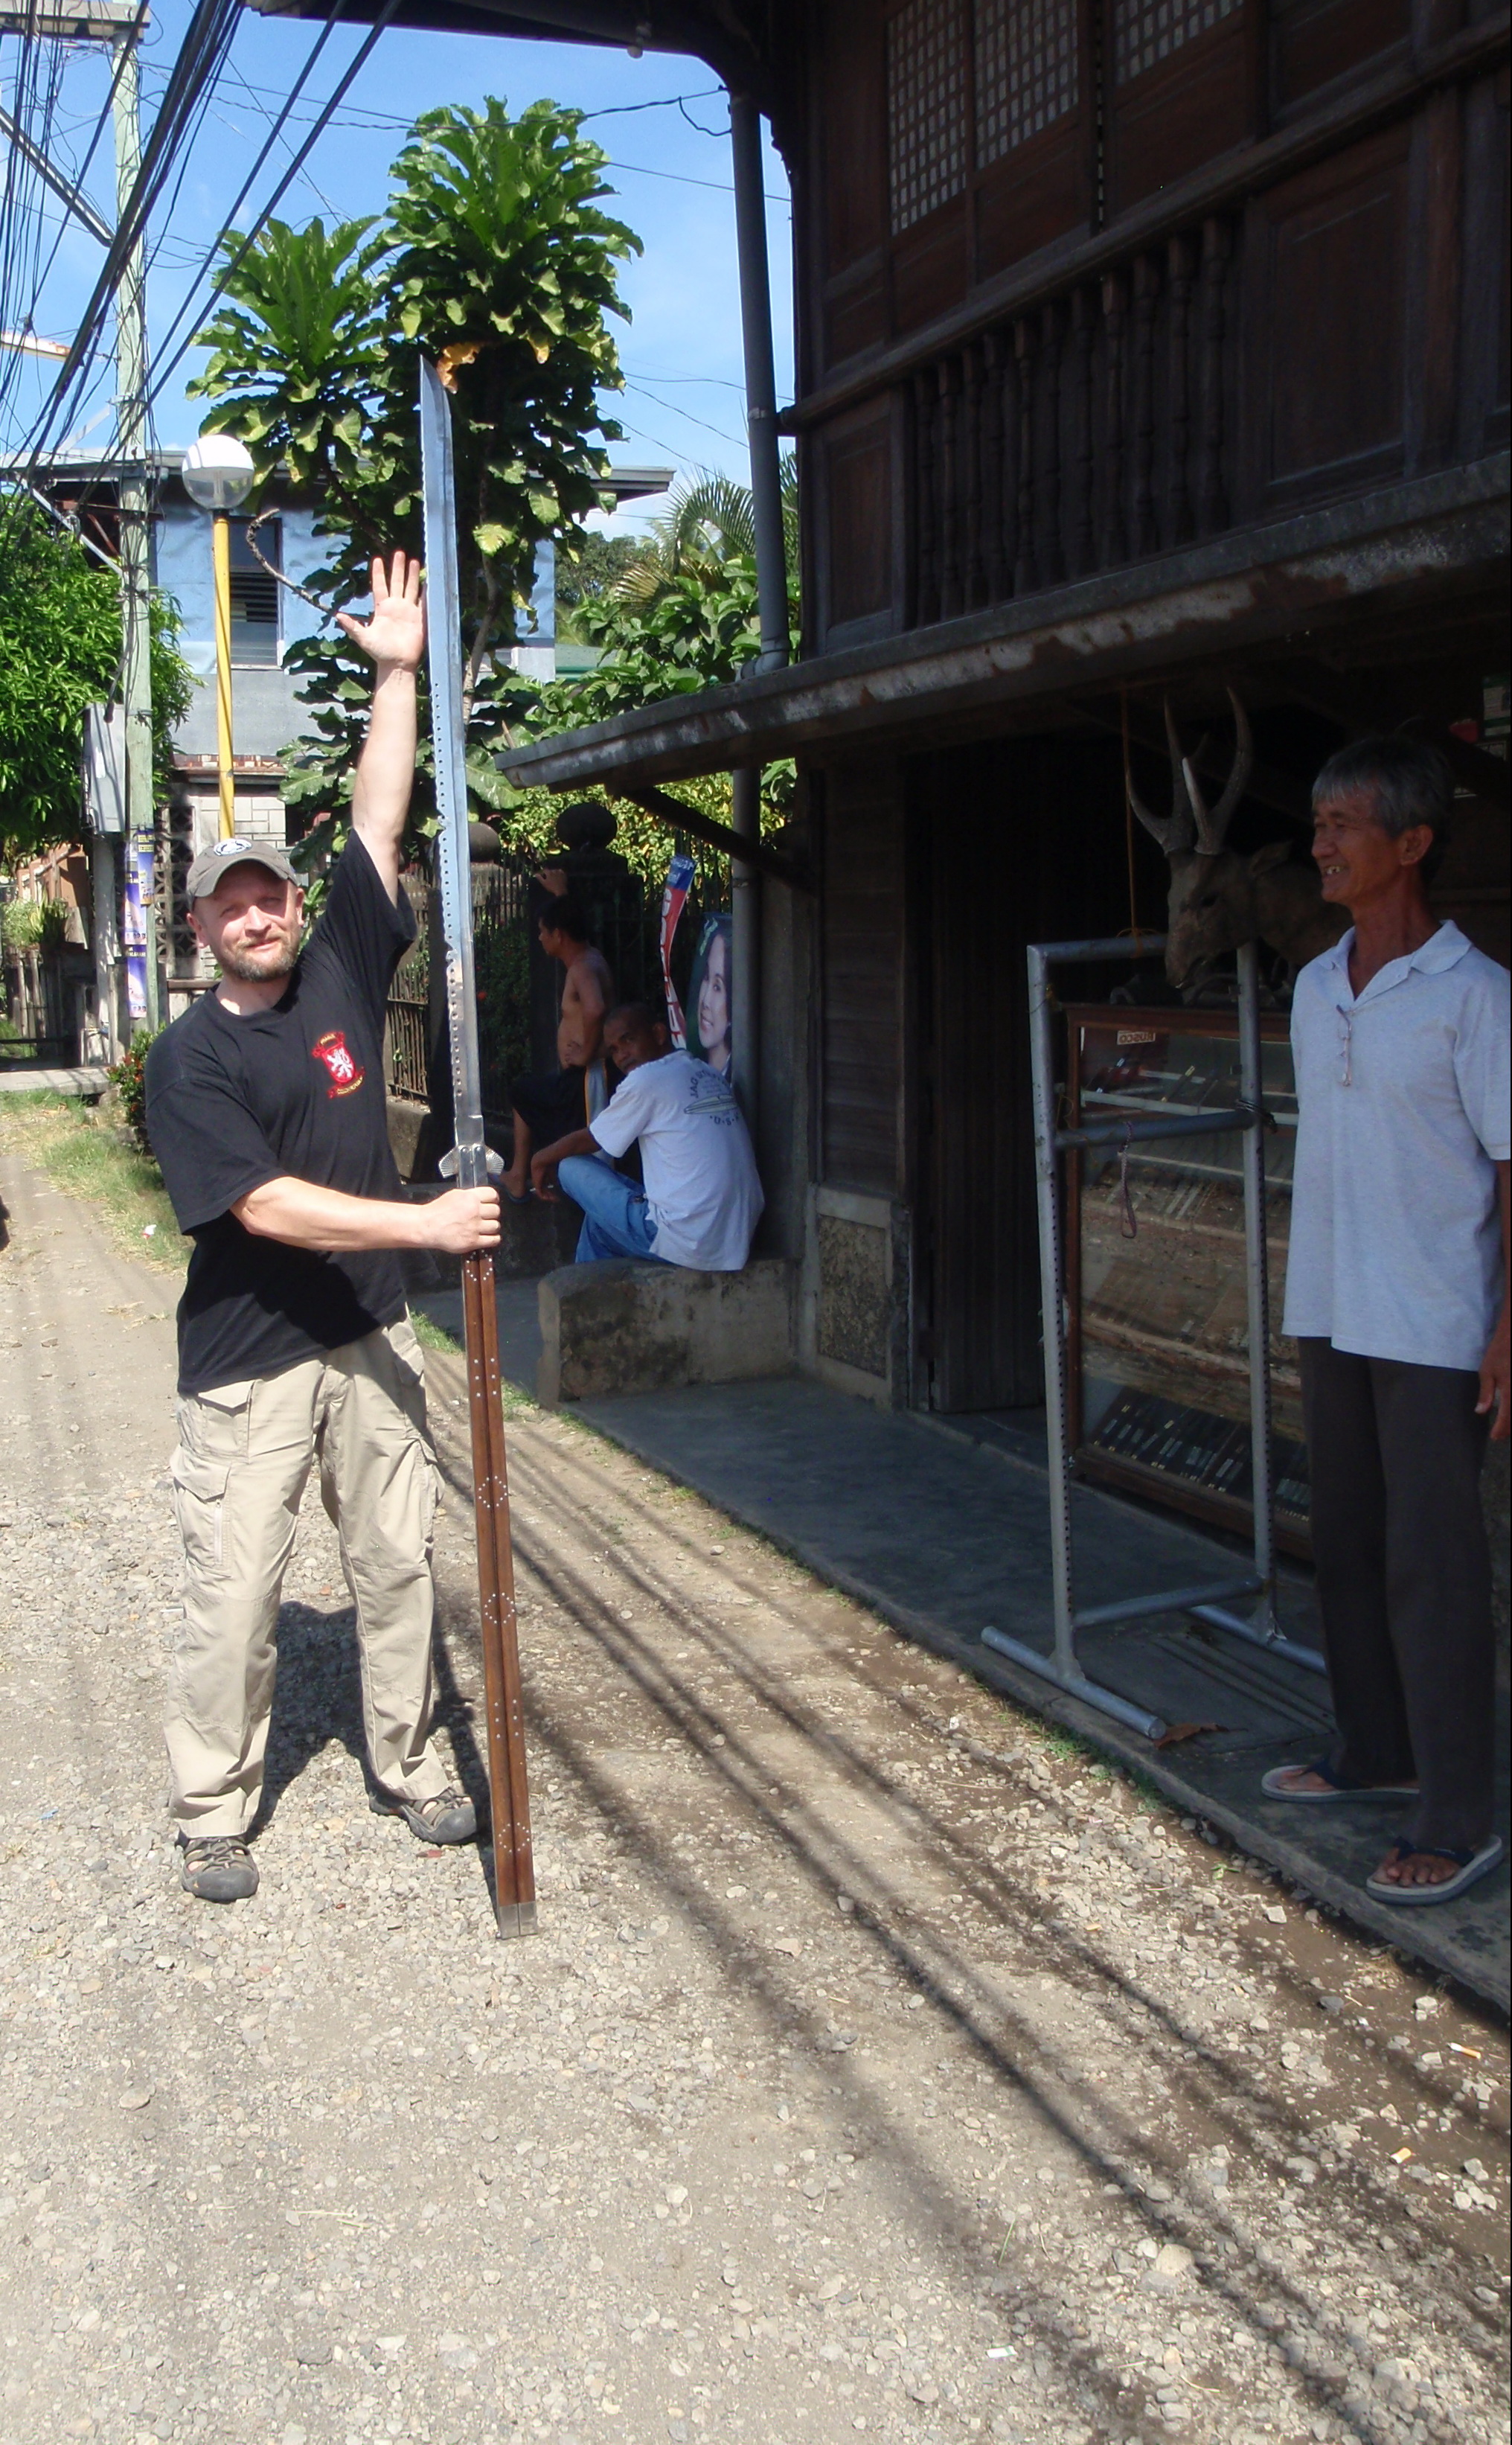 Největší Balisong s kterým jsem se na Filipínách setkal. Jeho celková délka byla cca 2,5 m.